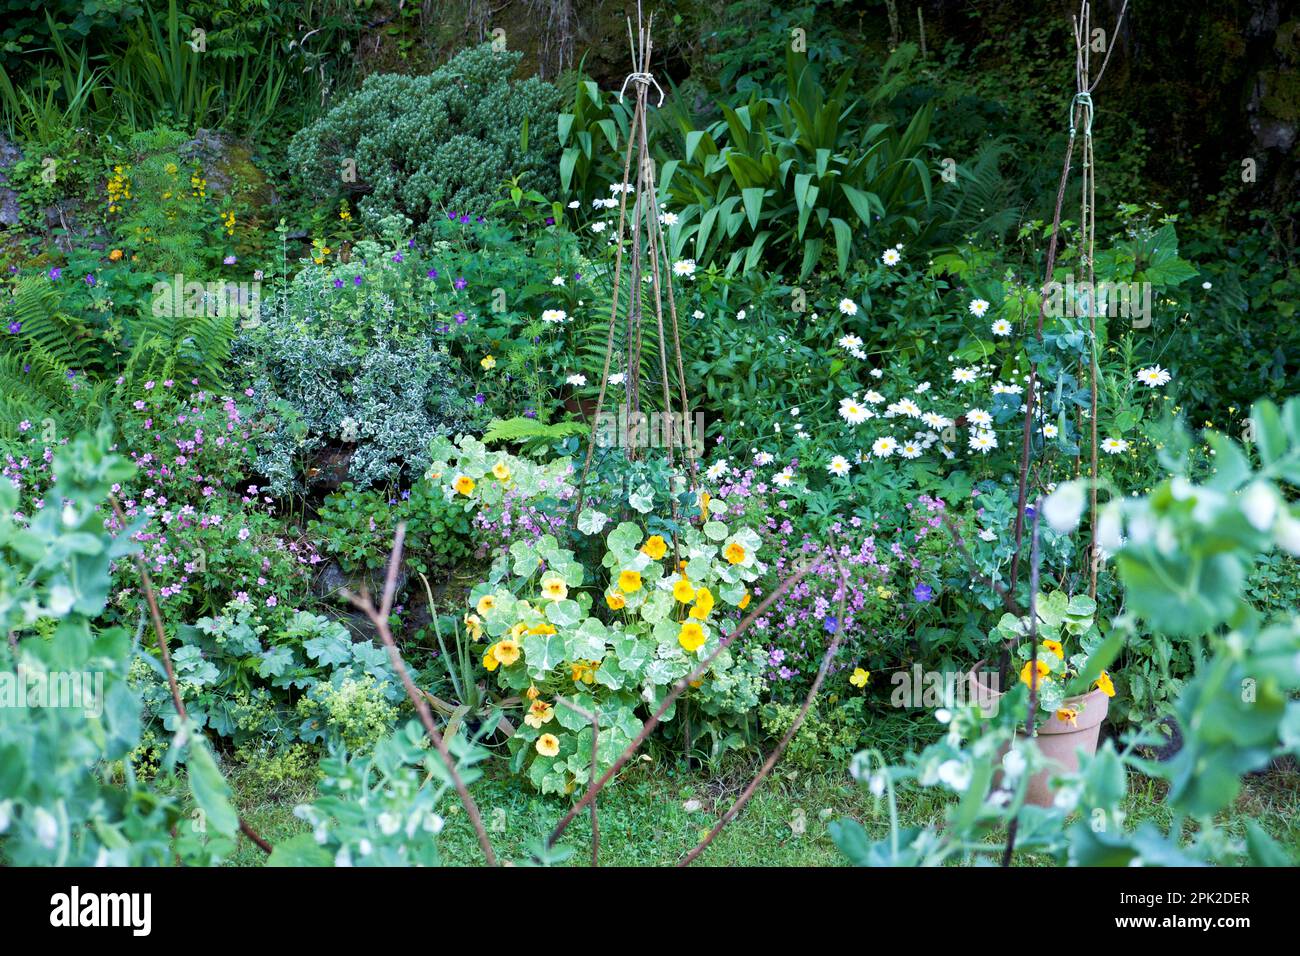 Shrubs perennials, annuals, flowers nasturtiums, daisies, Johnson geraniums in bloom in July rock garden Carmarthenshire Wales UK KATHY DEWITT Stock Photo